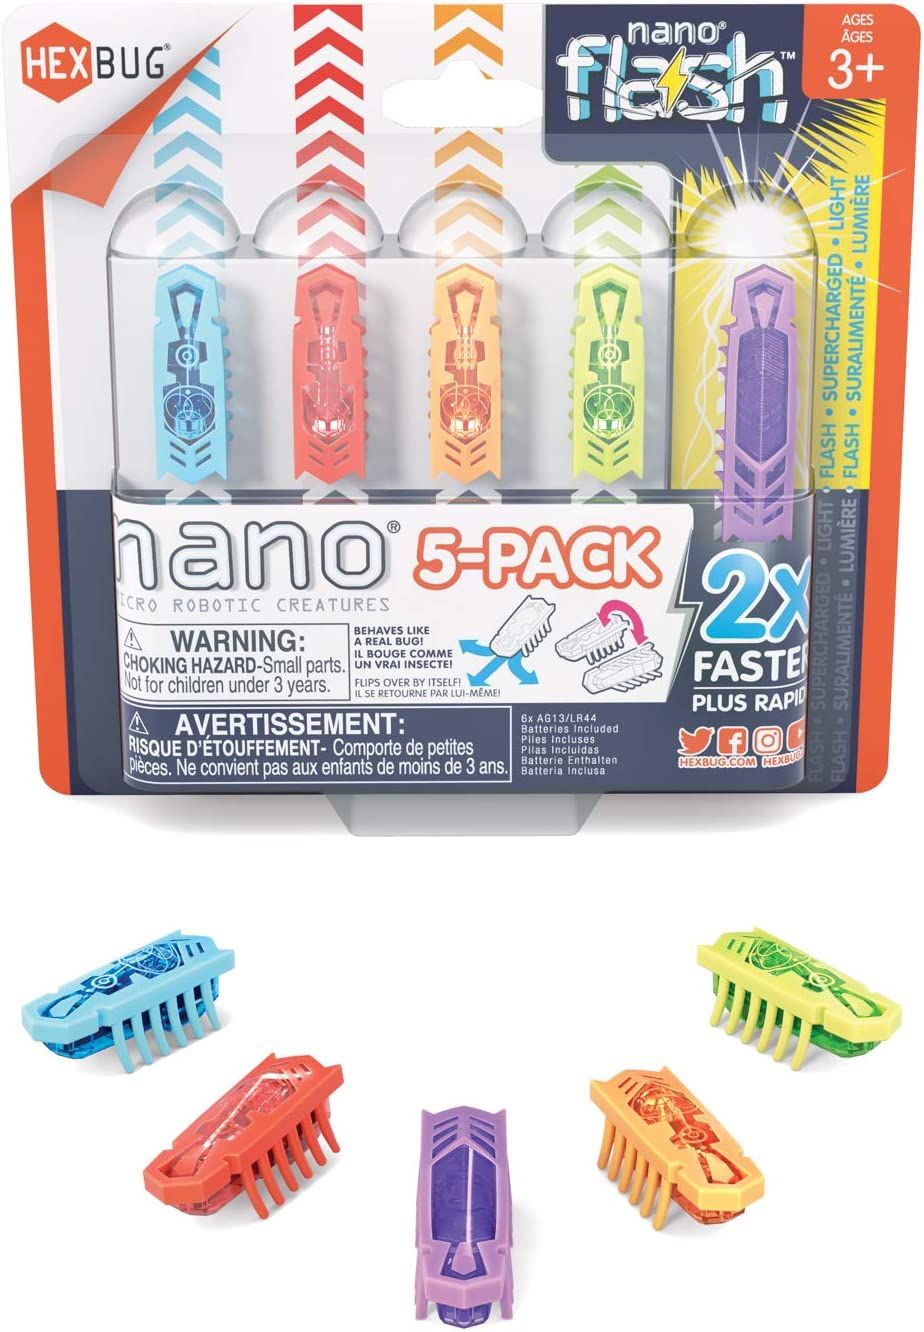 HEXBUG Nano 5 Pack - 4 nanos Plus Bonus Flash Nano - Sensory Vibration Toys for Kids and Cats - S... | Amazon (US)